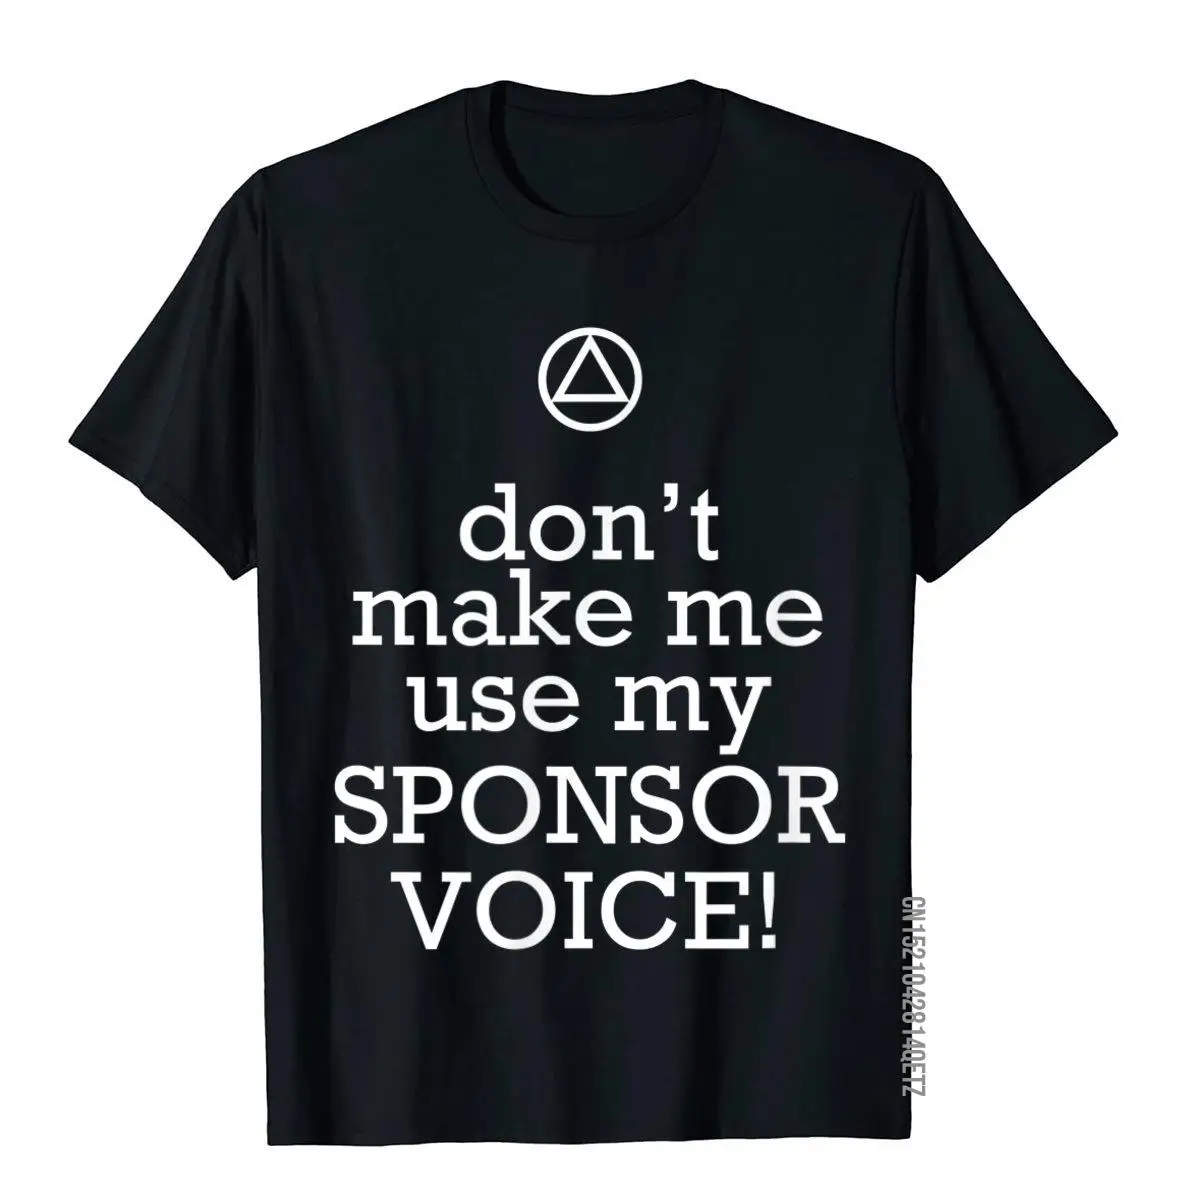 

Забавная футболка АА «Не заставляй меня использовать мой спонсор голос», мужские топы большого размера, футболки в стиле хип-хоп, хлопковые ...